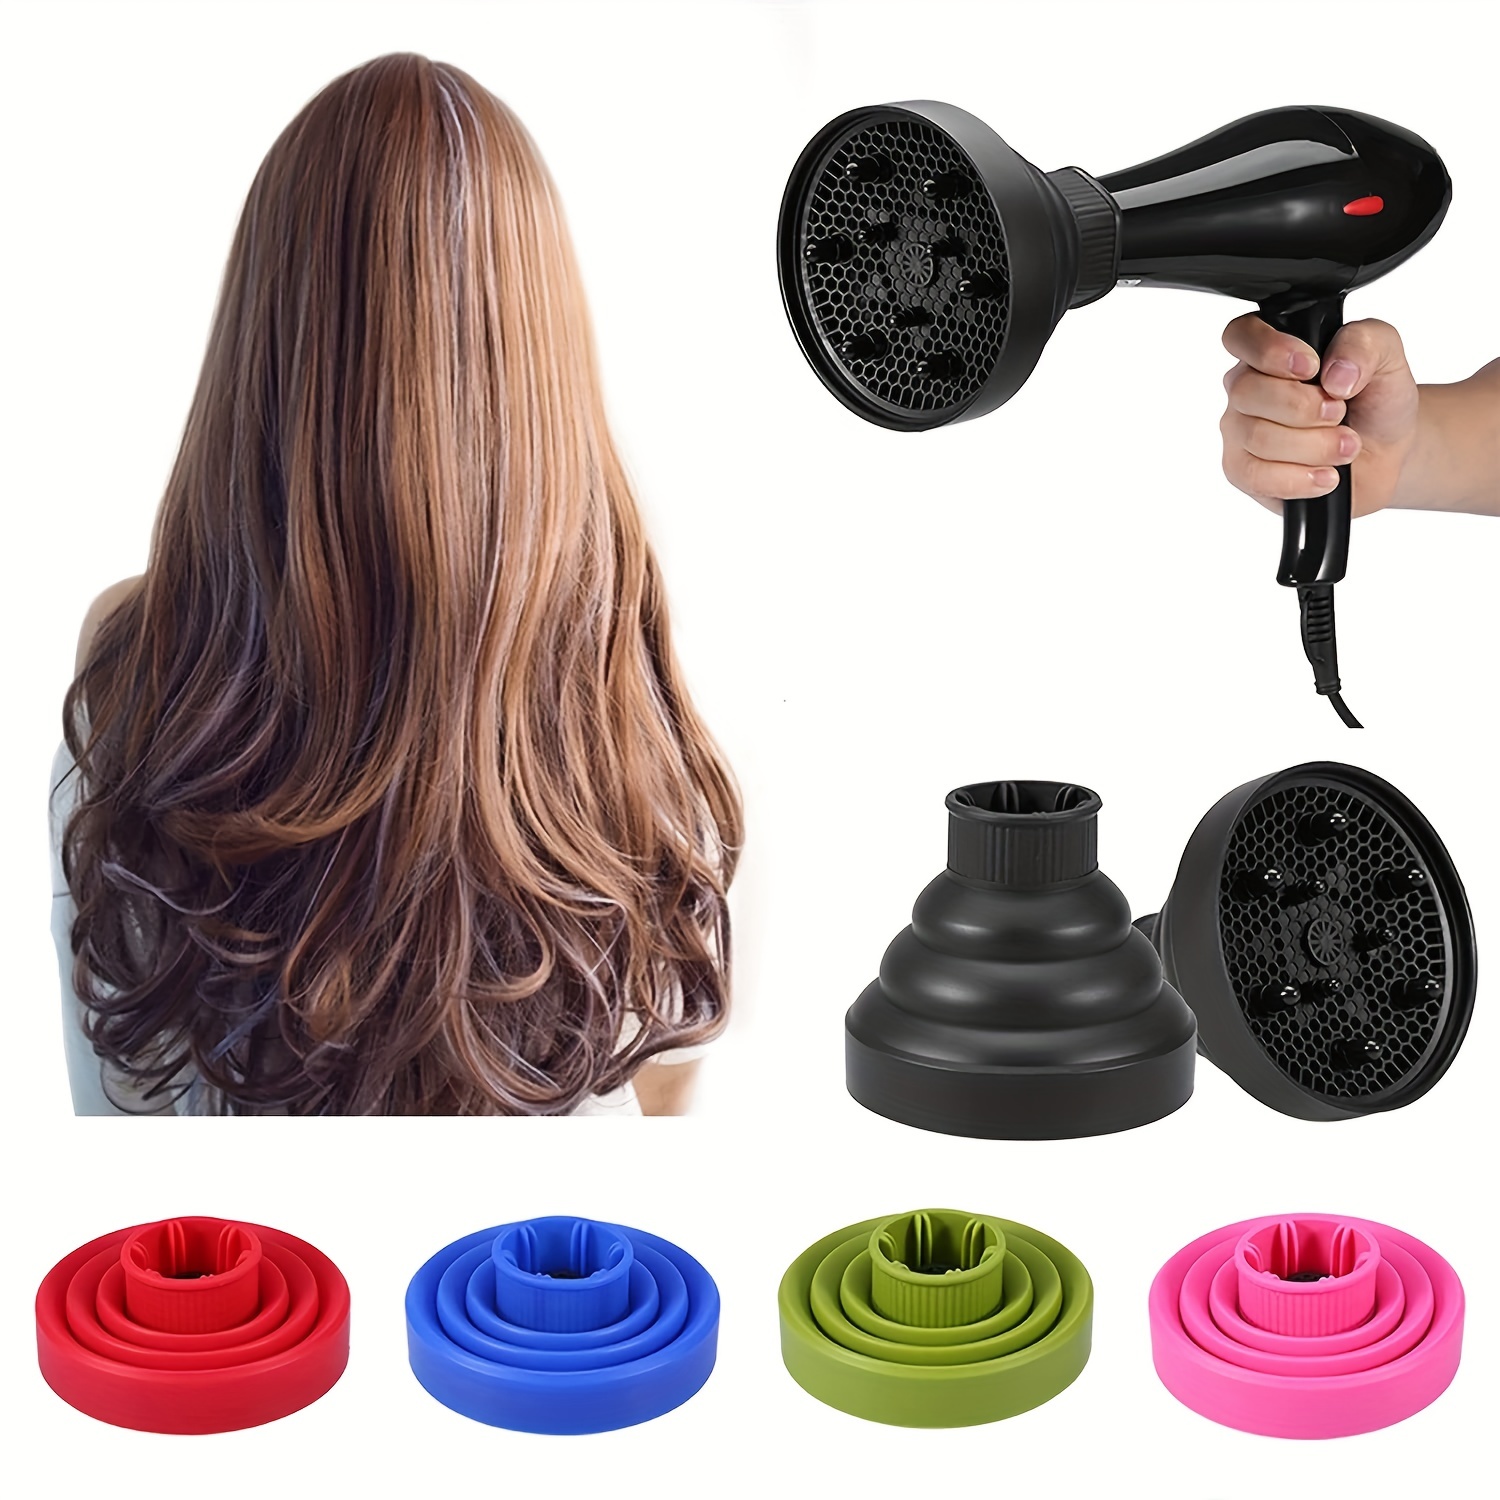 Difusor de secador de pelo, difusor de secadora de pelo de silicona  plegable, difusor de secador de pelo plegable de silicona para el cuidado  del